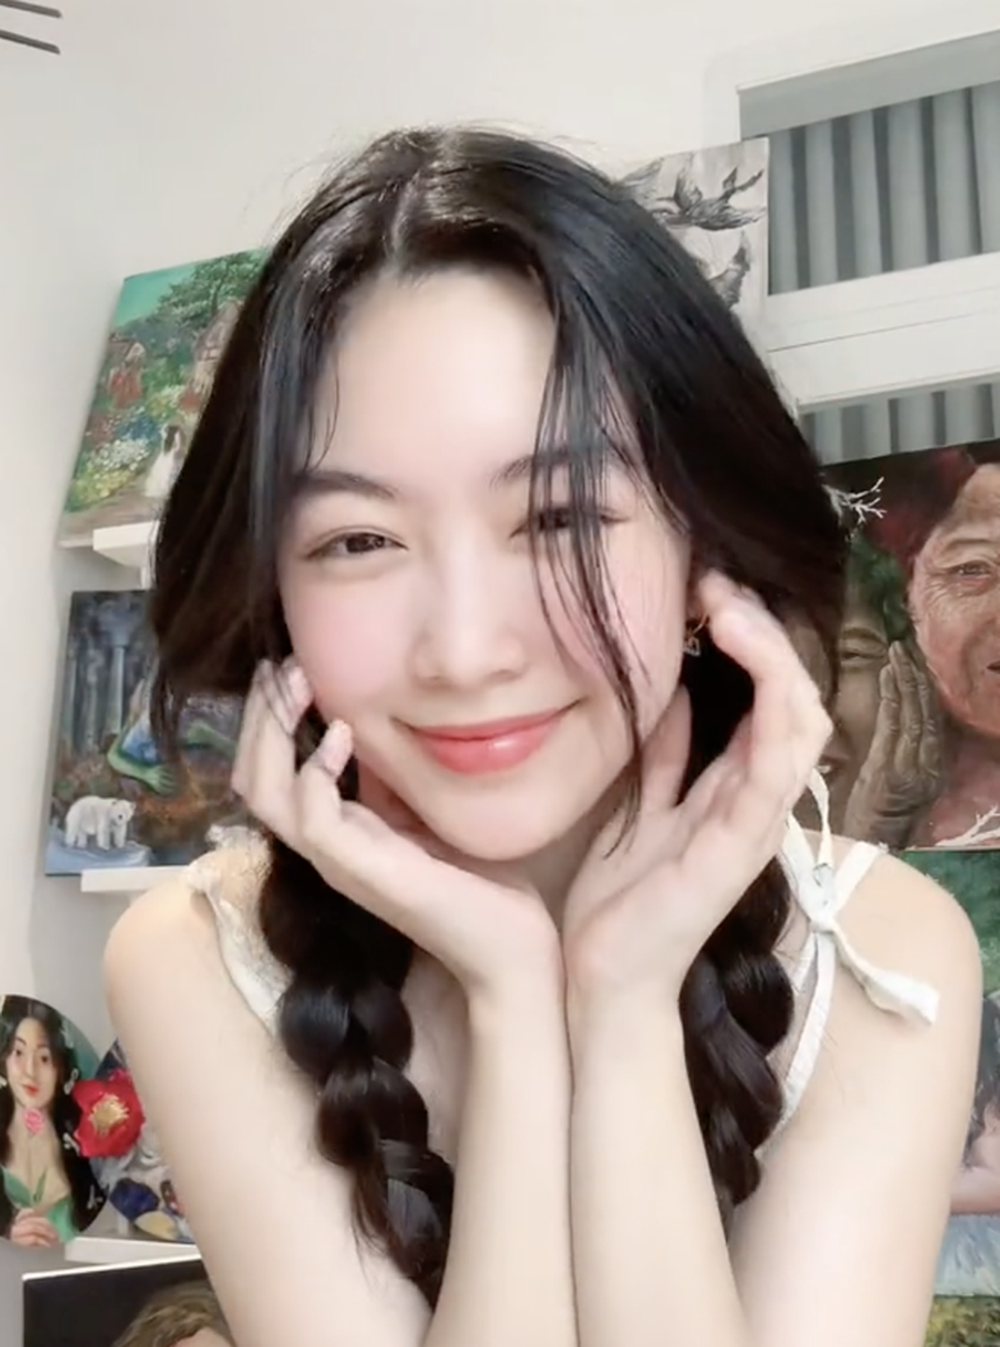 Ái nữ nhà MC Quyền Linh khoe visual như Hoa hậu, loạt “gia tài” phía sau gây chú ý không kém - ảnh 2